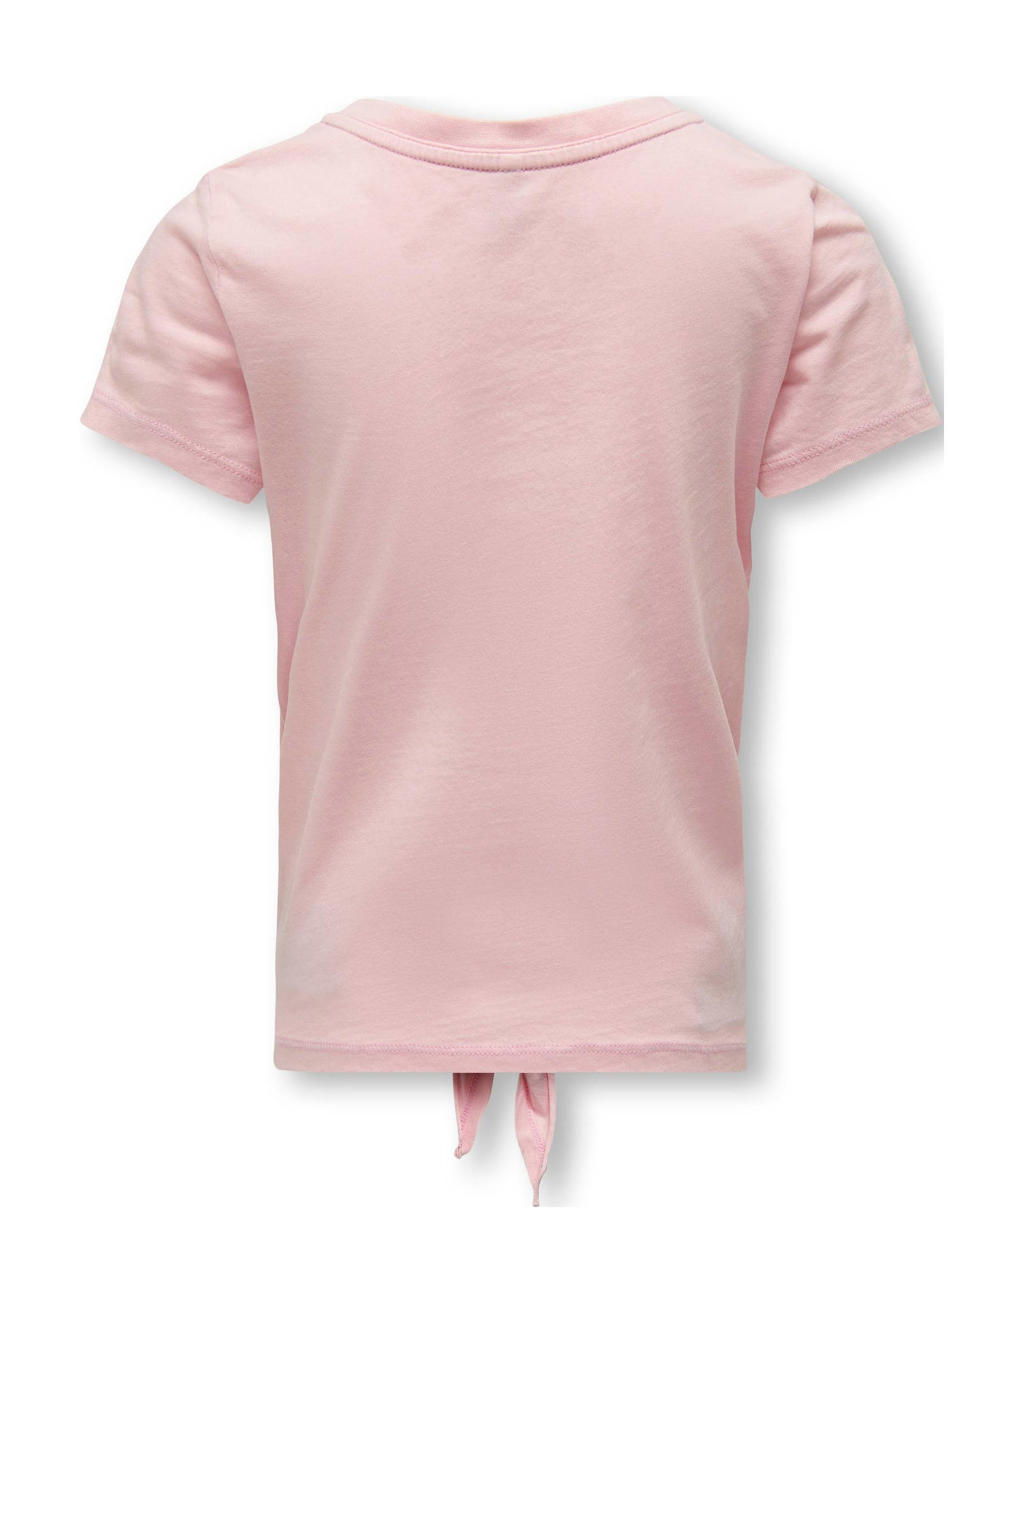 Roze meisjes KIDS ONLY GIRL T-shirt van katoen met printopdruk, korte mouwen, ronde hals en knoopdetail